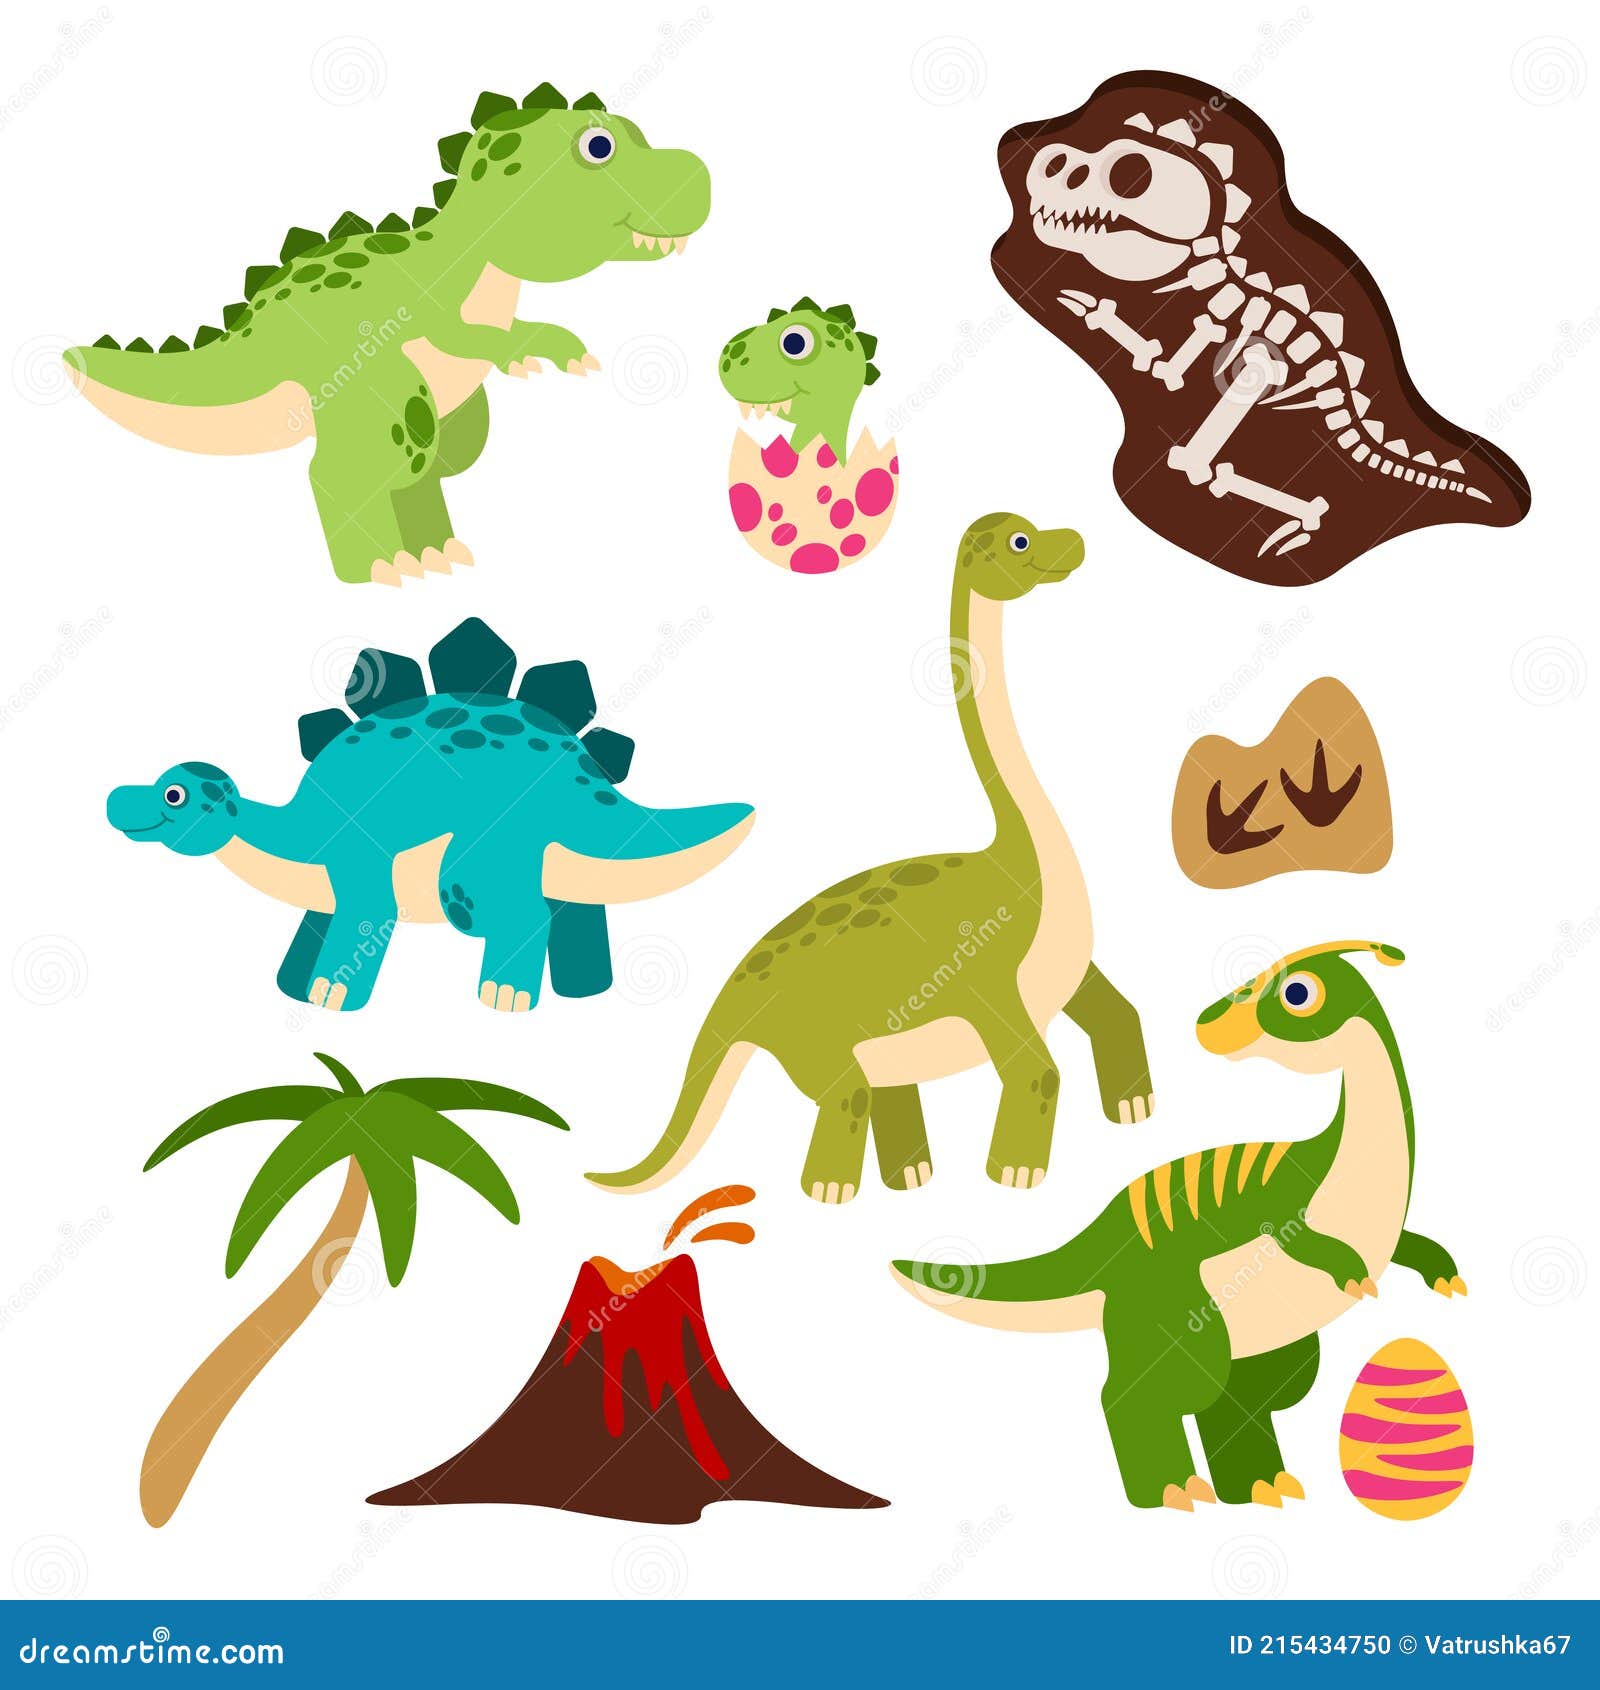 Conjunto de desenhos de dinossauros fofos para crianças e bebês